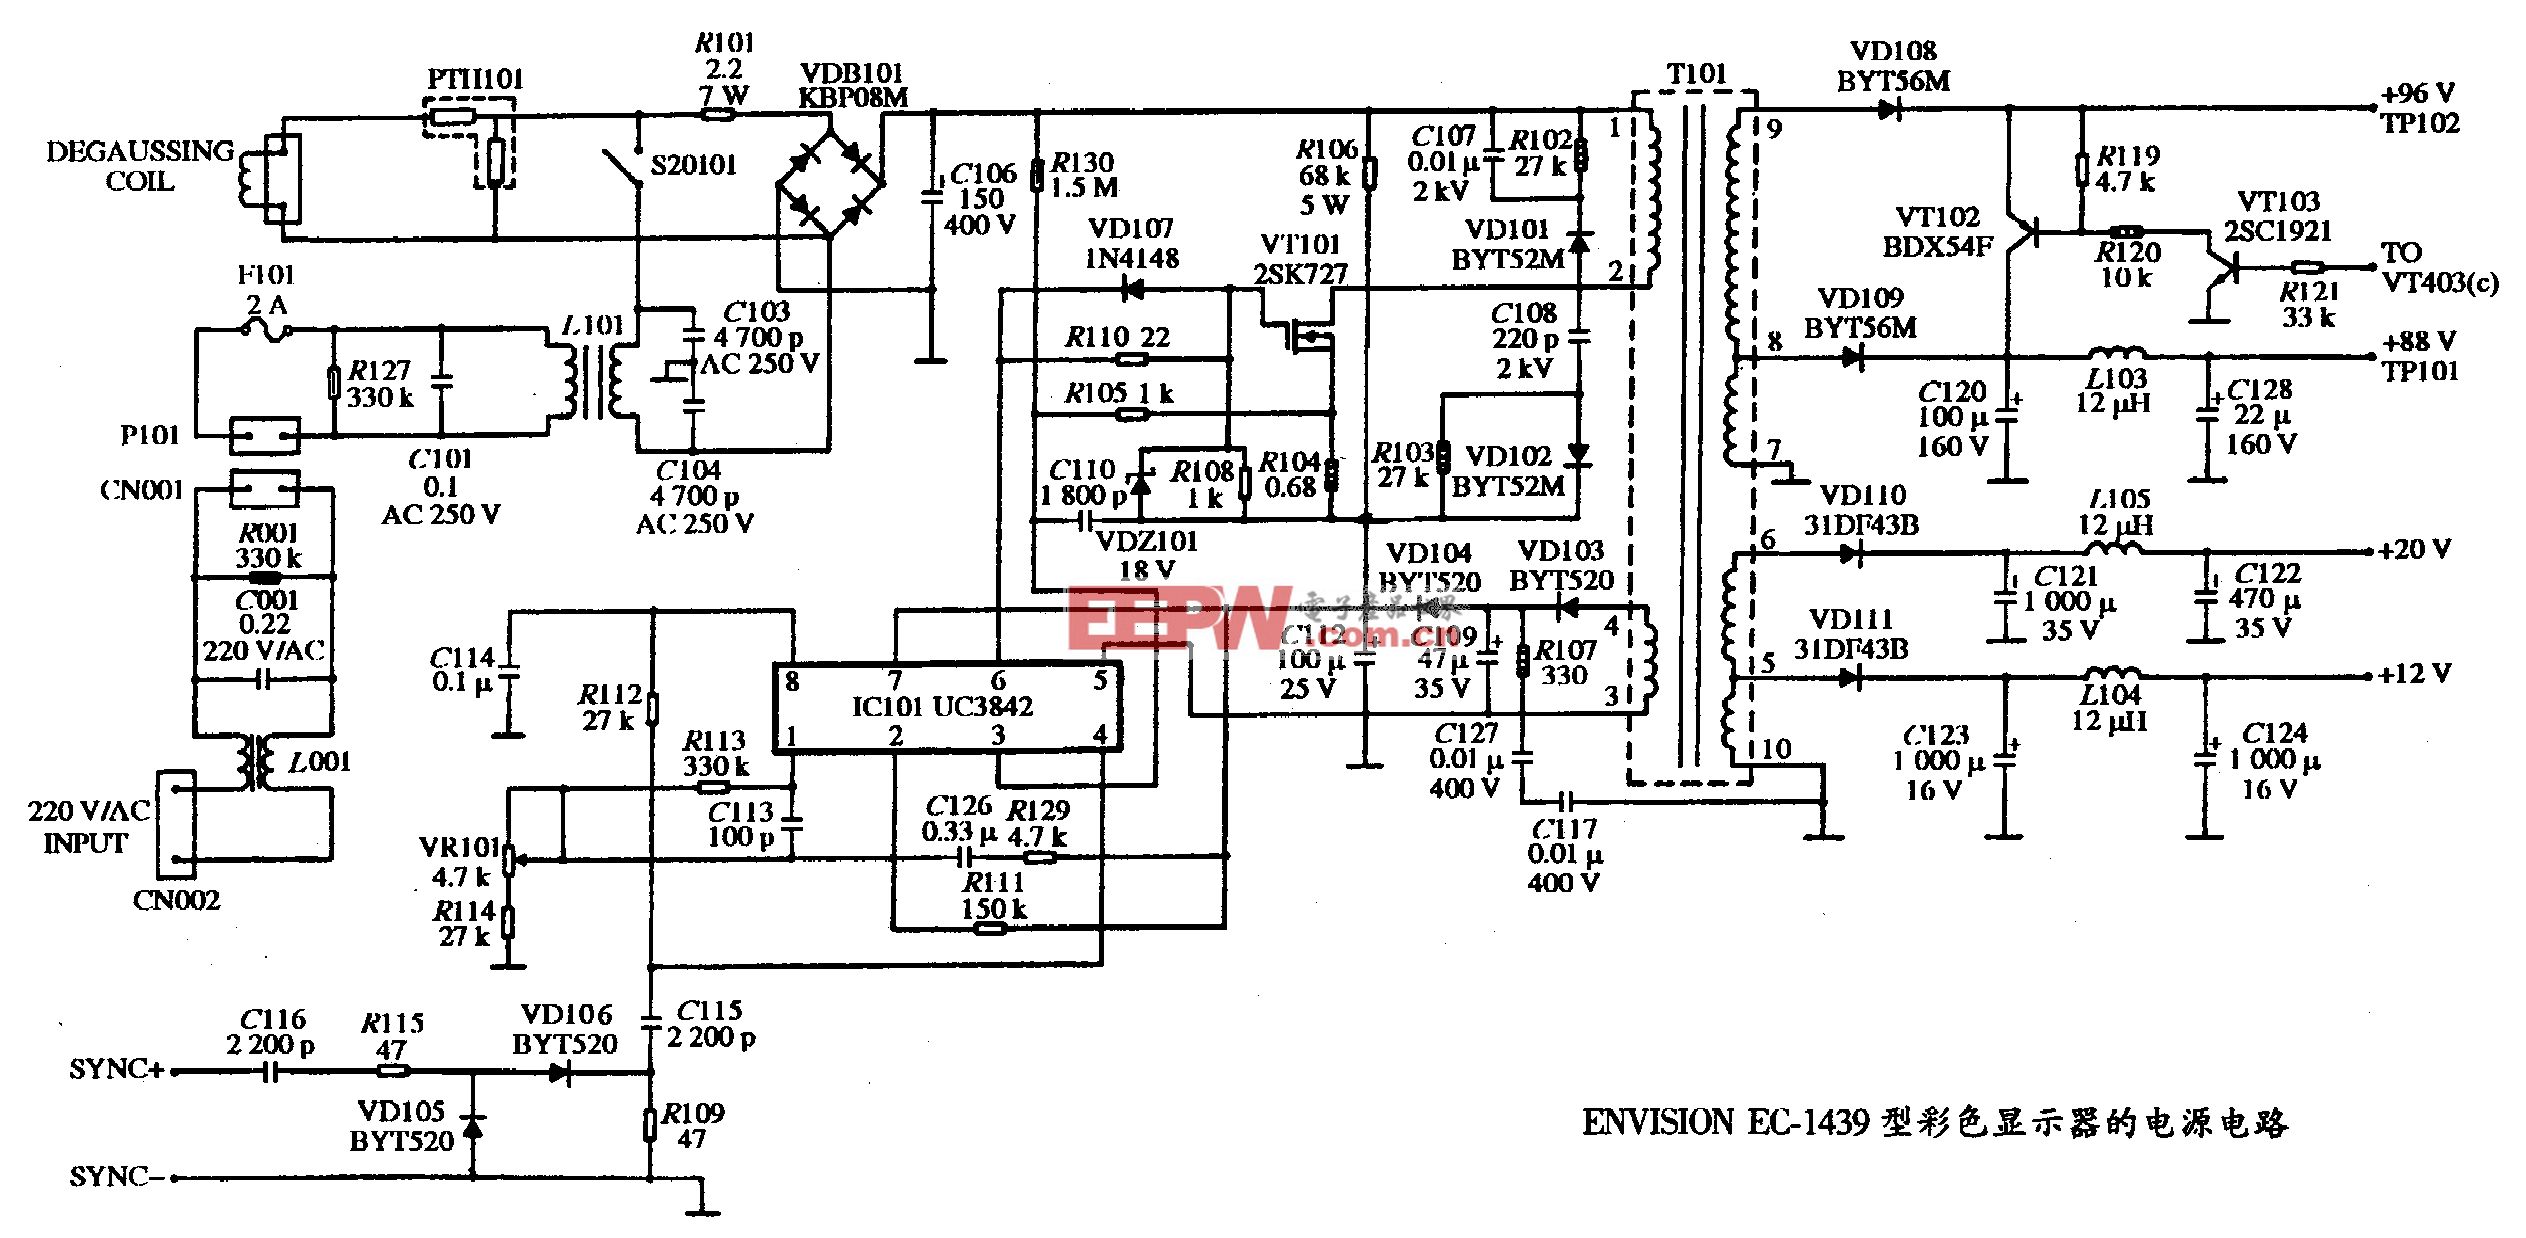 47、ENVISION EC-1439型彩色显示器的电源电路图